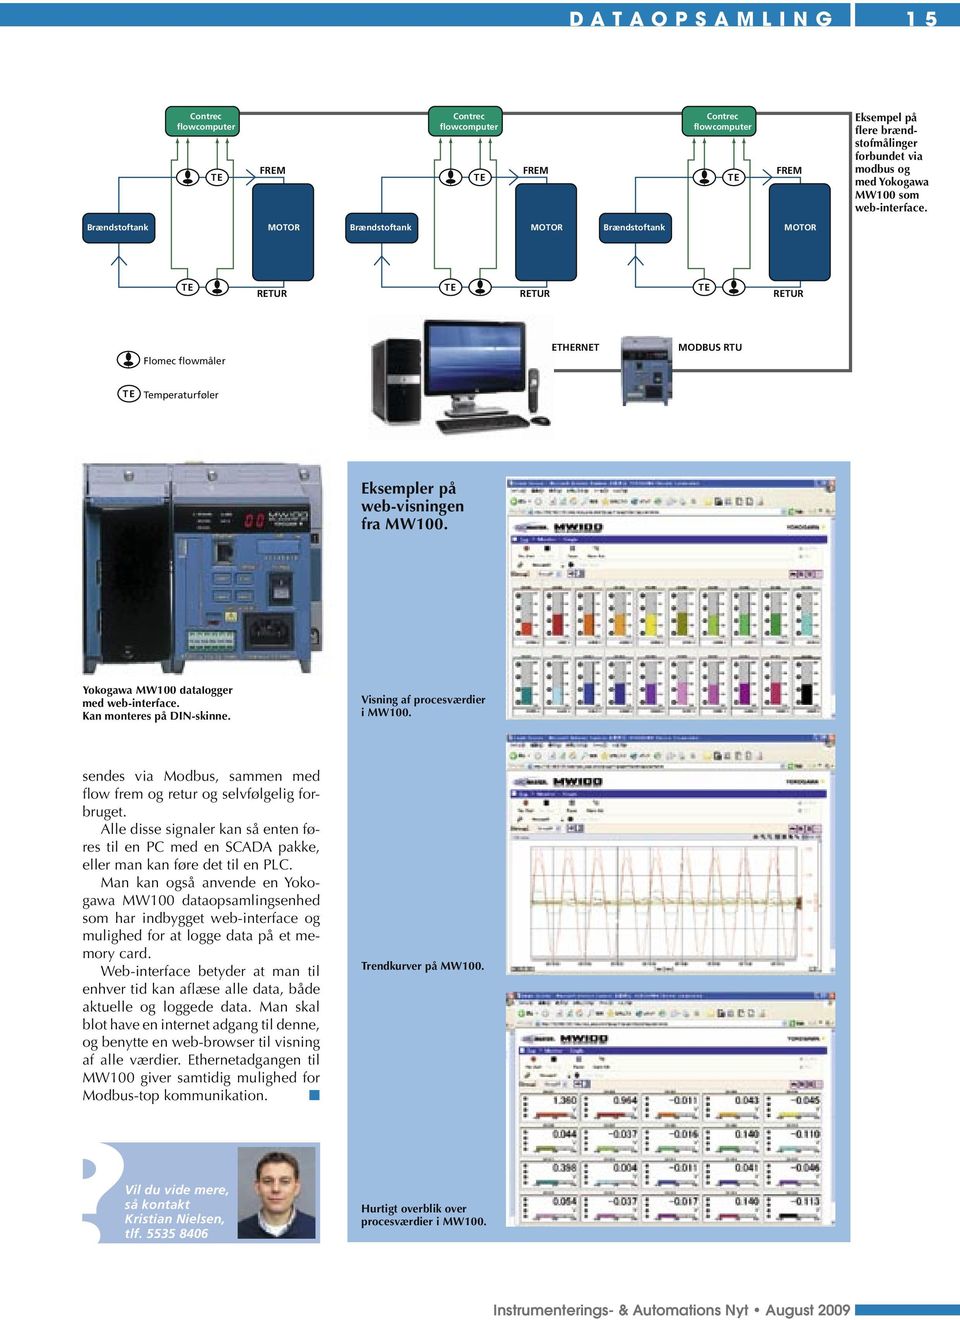 Yokogawa MW100 datalogger med web-interface. Kan monteres på DIN-skinne. Visning af procesværdier i MW100. sendes via Modbus, sammen med flow frem og retur og selvfølgelig forbruget.